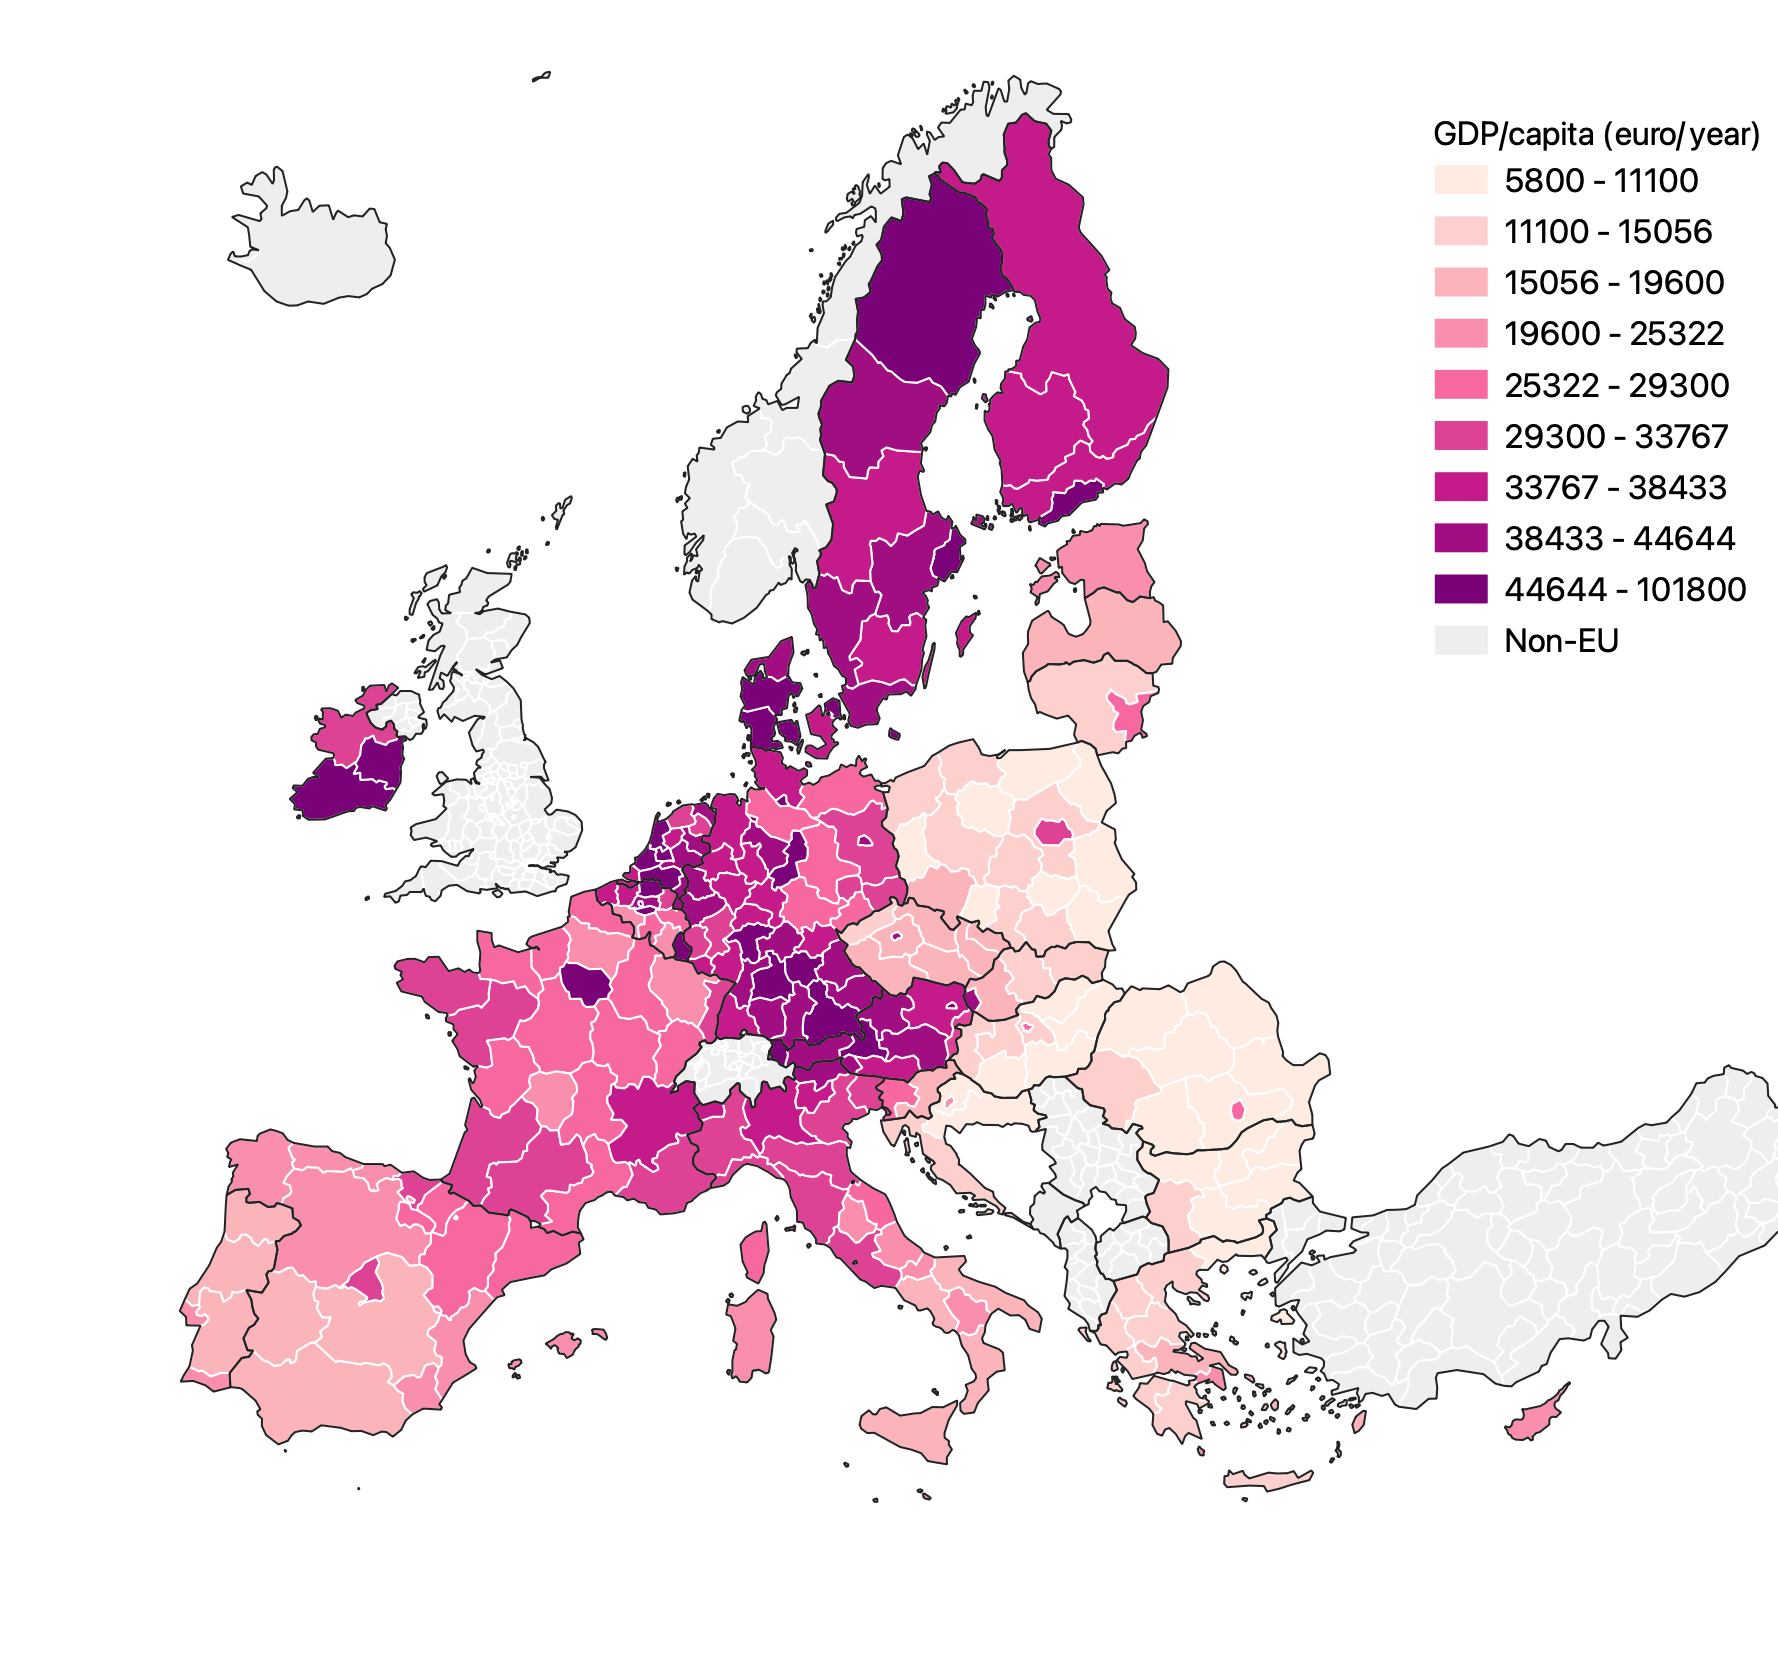 A choropleth map showing regional GDP in EU regions